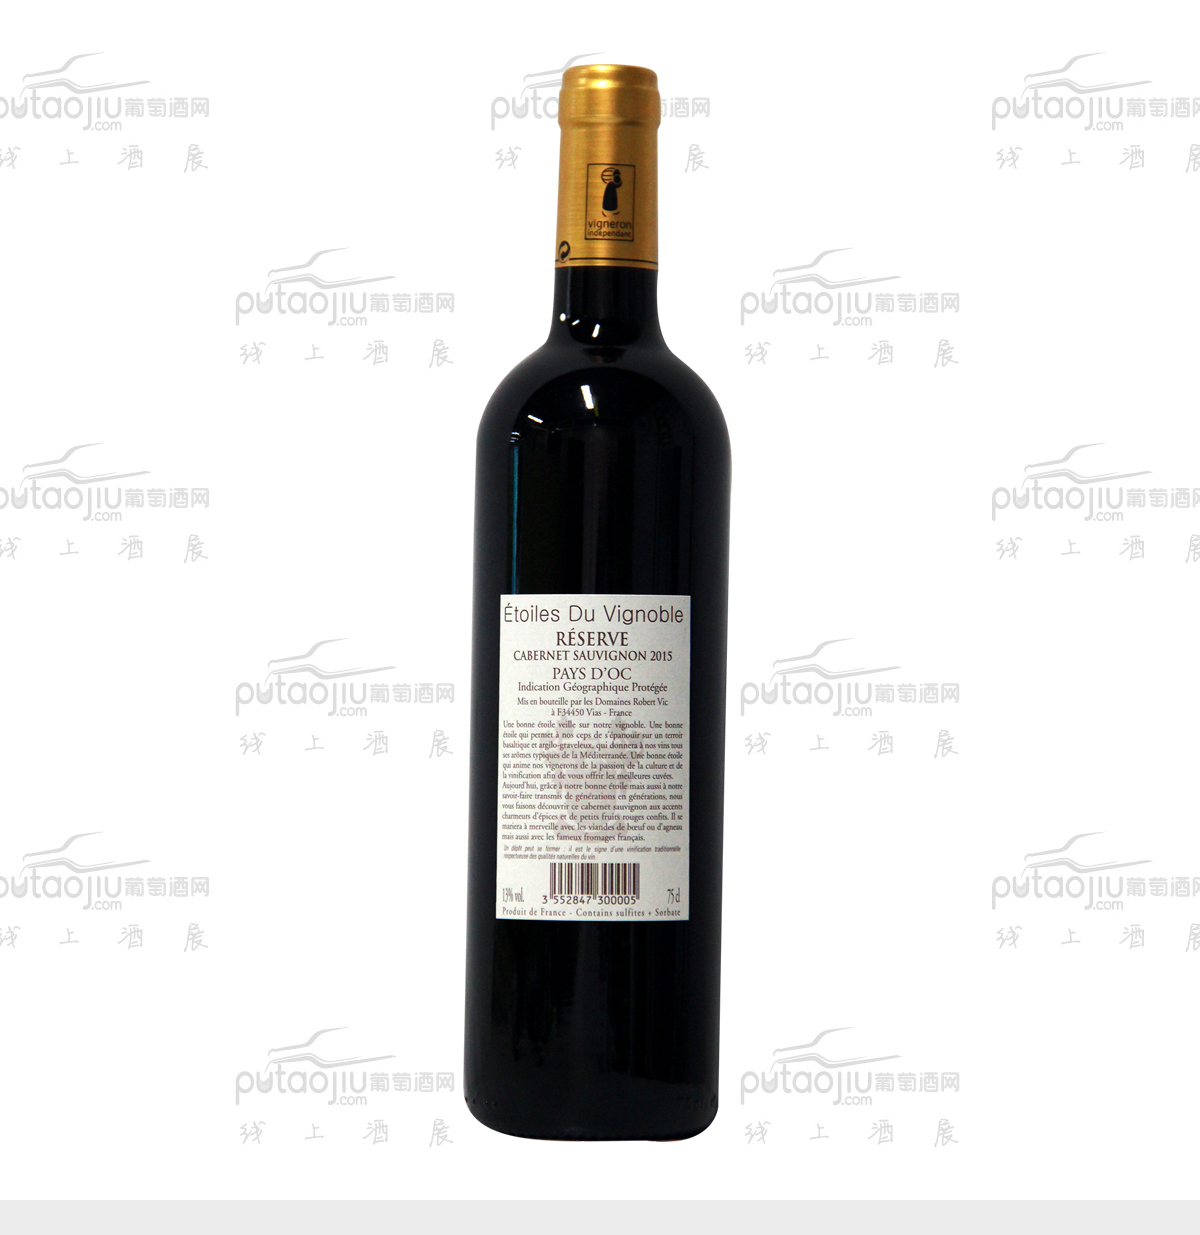 法国奥克地区维克家族1905酒庄星龄品牌赤霞珠IGP干红葡萄酒